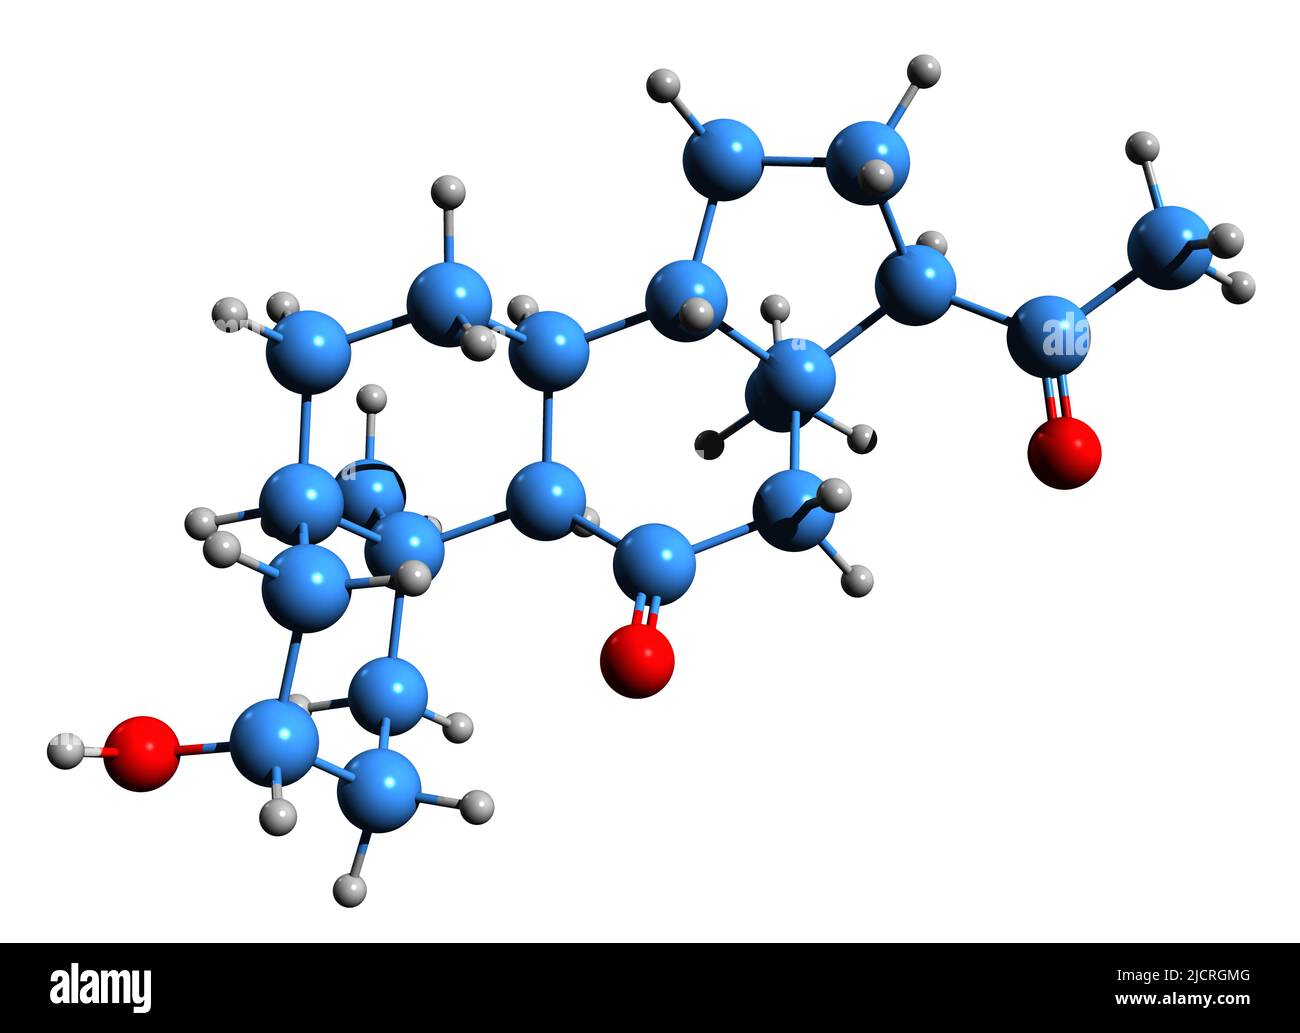 3D Imágen de la fórmula esquelética de Alfaxalone - estructura química molecular de un esteroide neuroactive aislado sobre fondo blanco Foto de stock